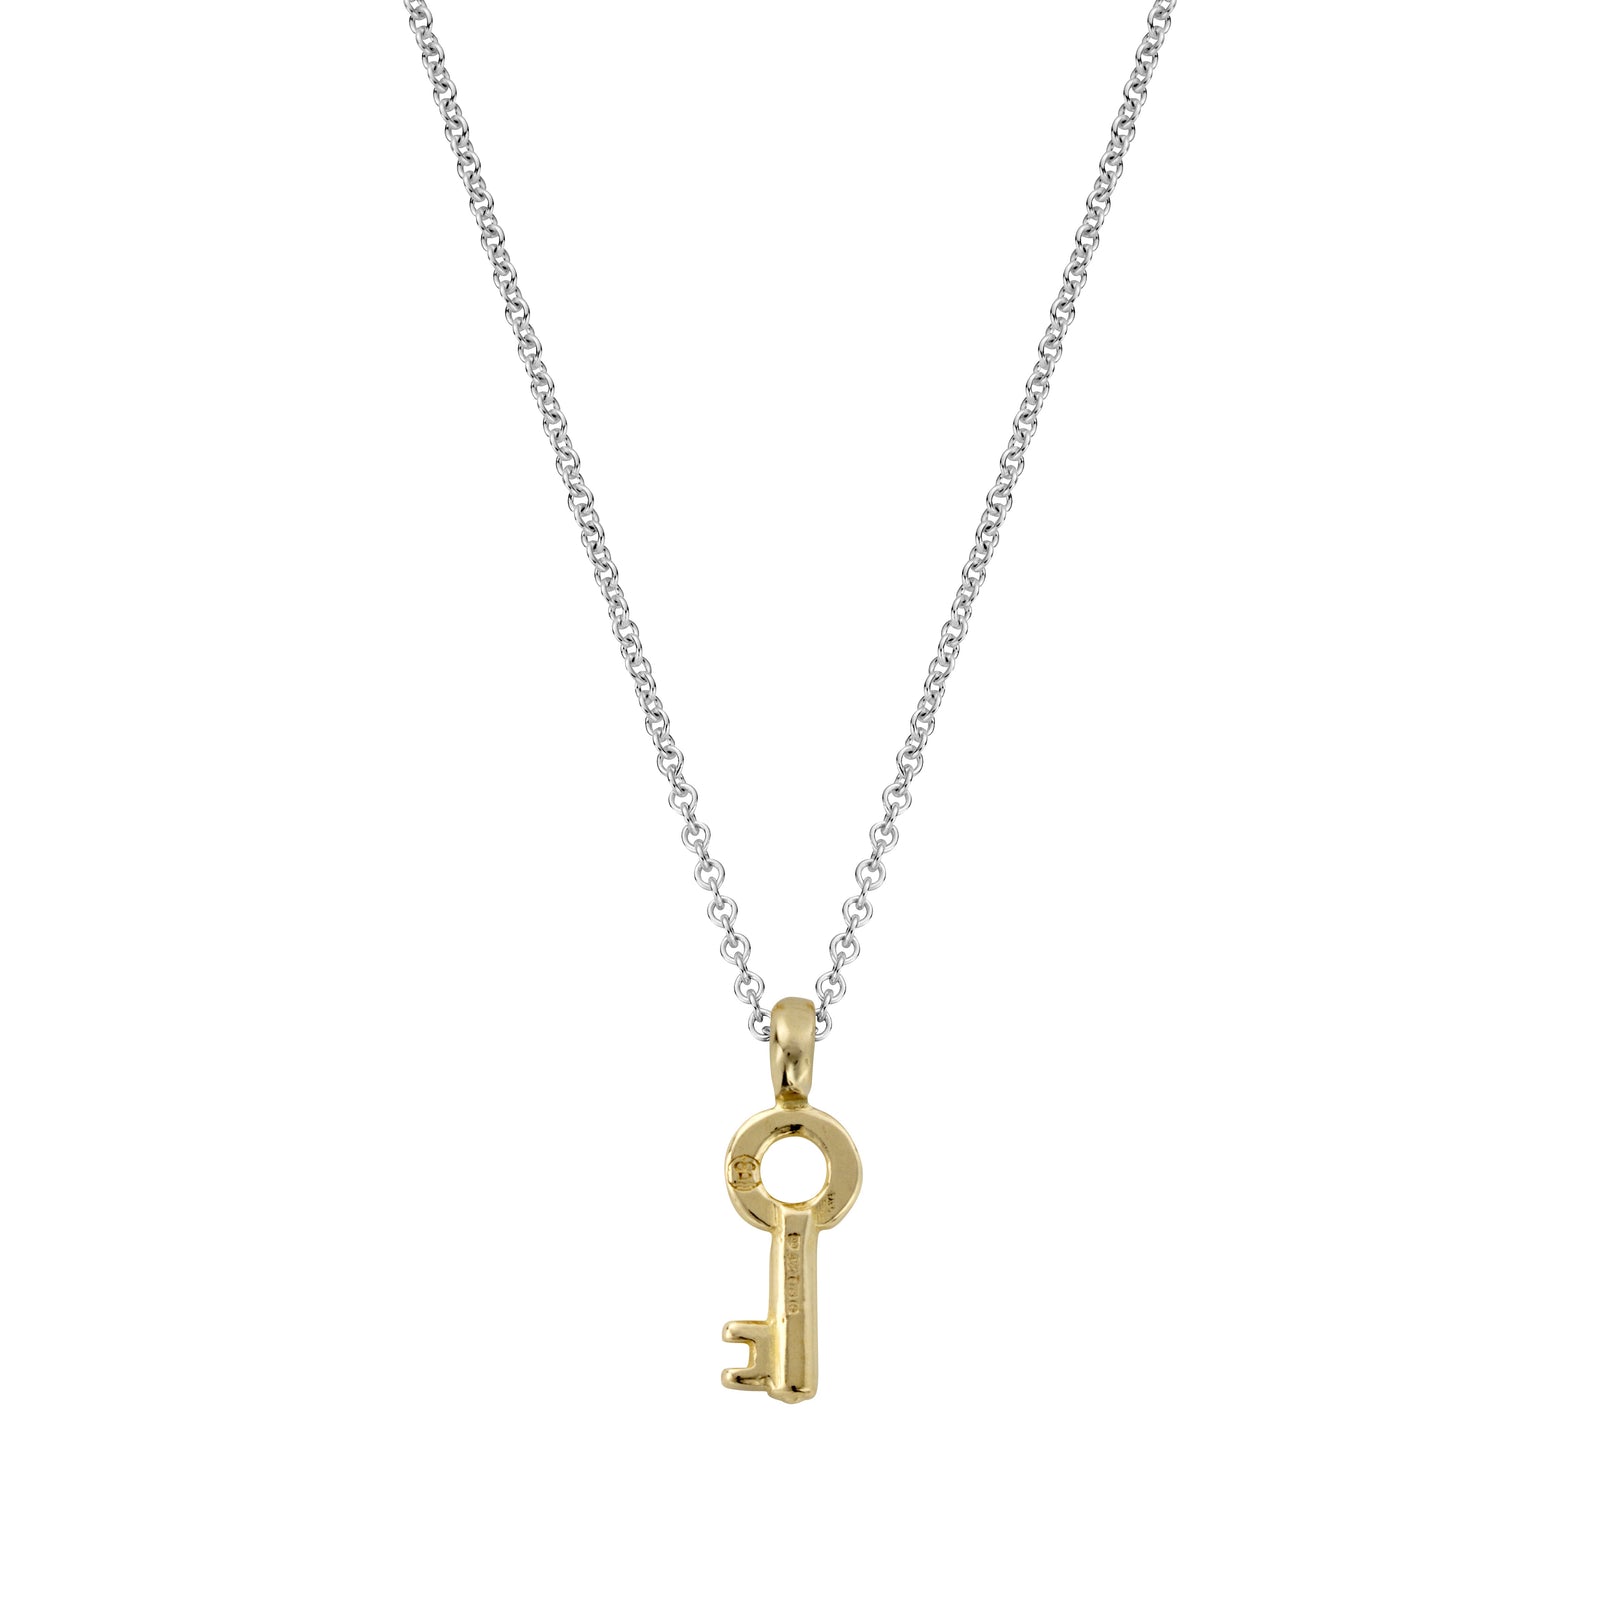 Silver & Gold Mini Dreamer's Key Necklace